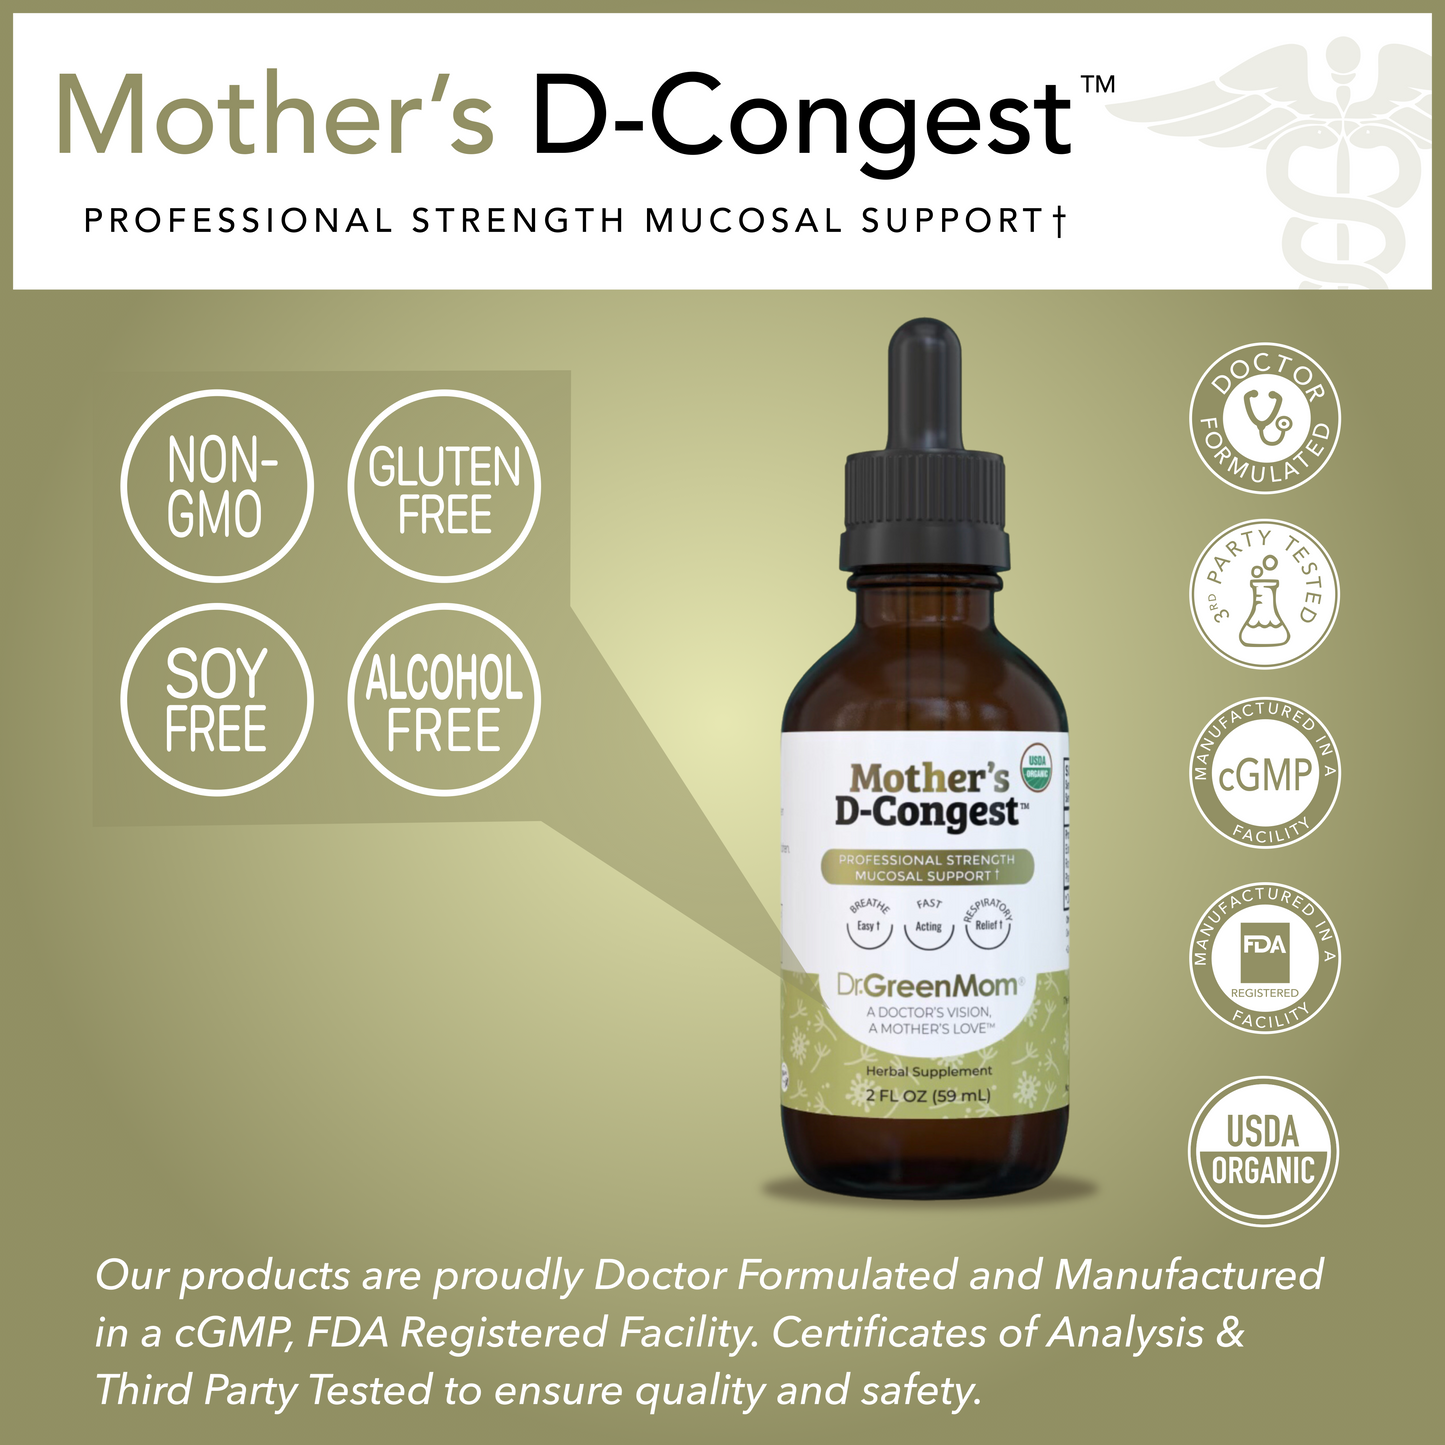 Mother's D-Congest™